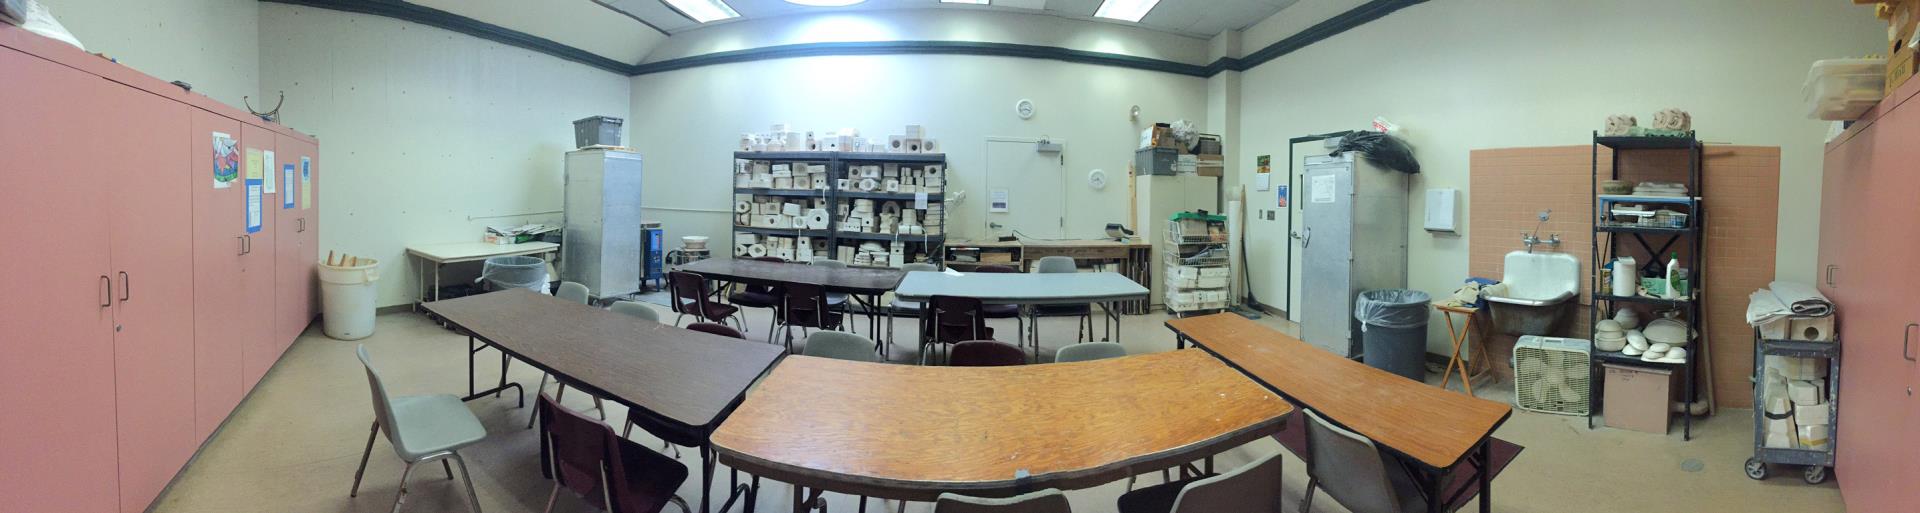 Ceramics Room